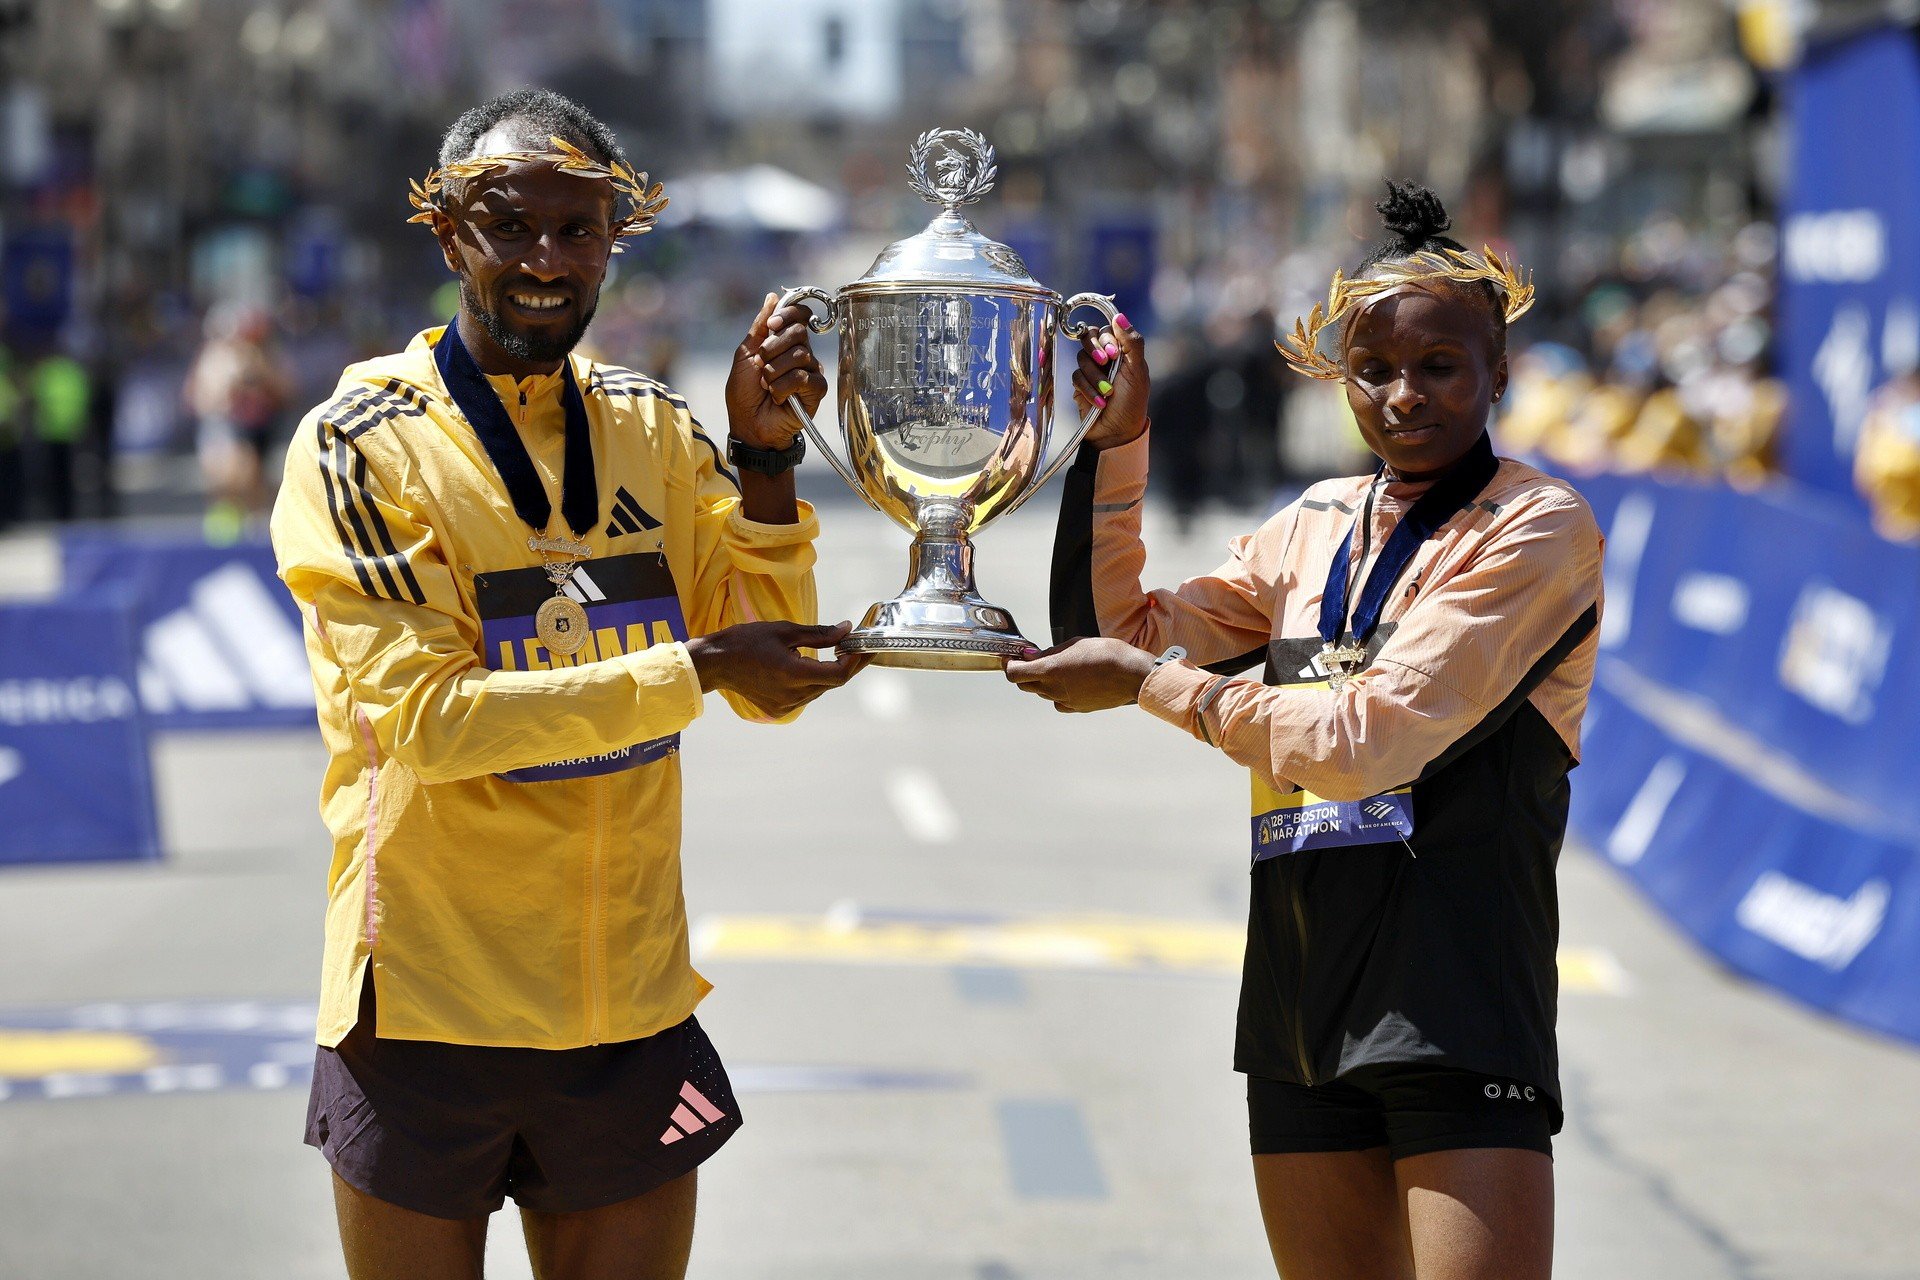 Etiopczyk Sisay Lemma i Kenijka Hellen Obiri zwycięzcami Maratonu w Bostonie